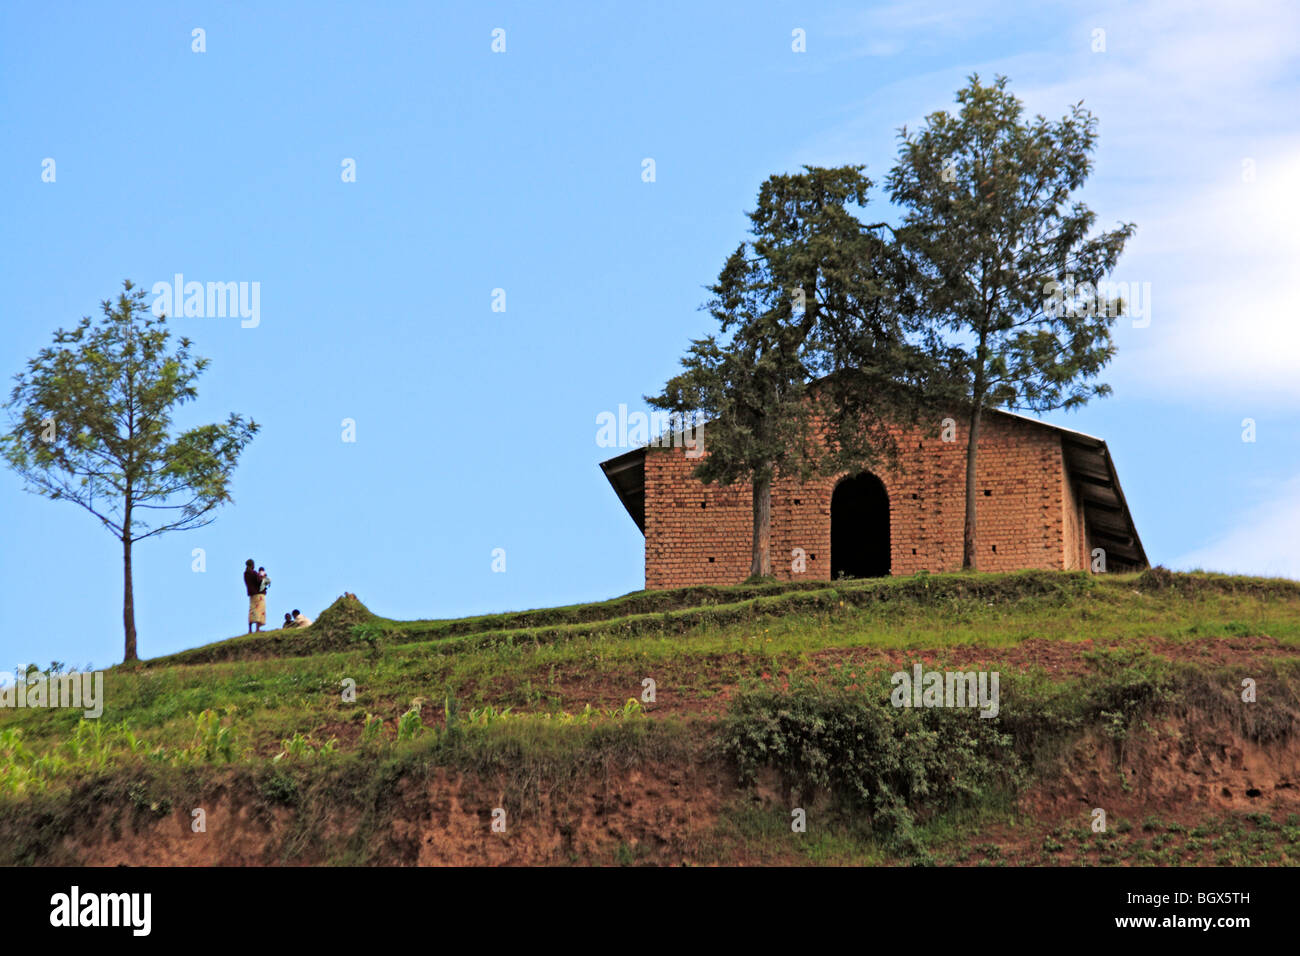 Rural architecture, Lake Mburo National park, Uganda, East Africa Stock Photo